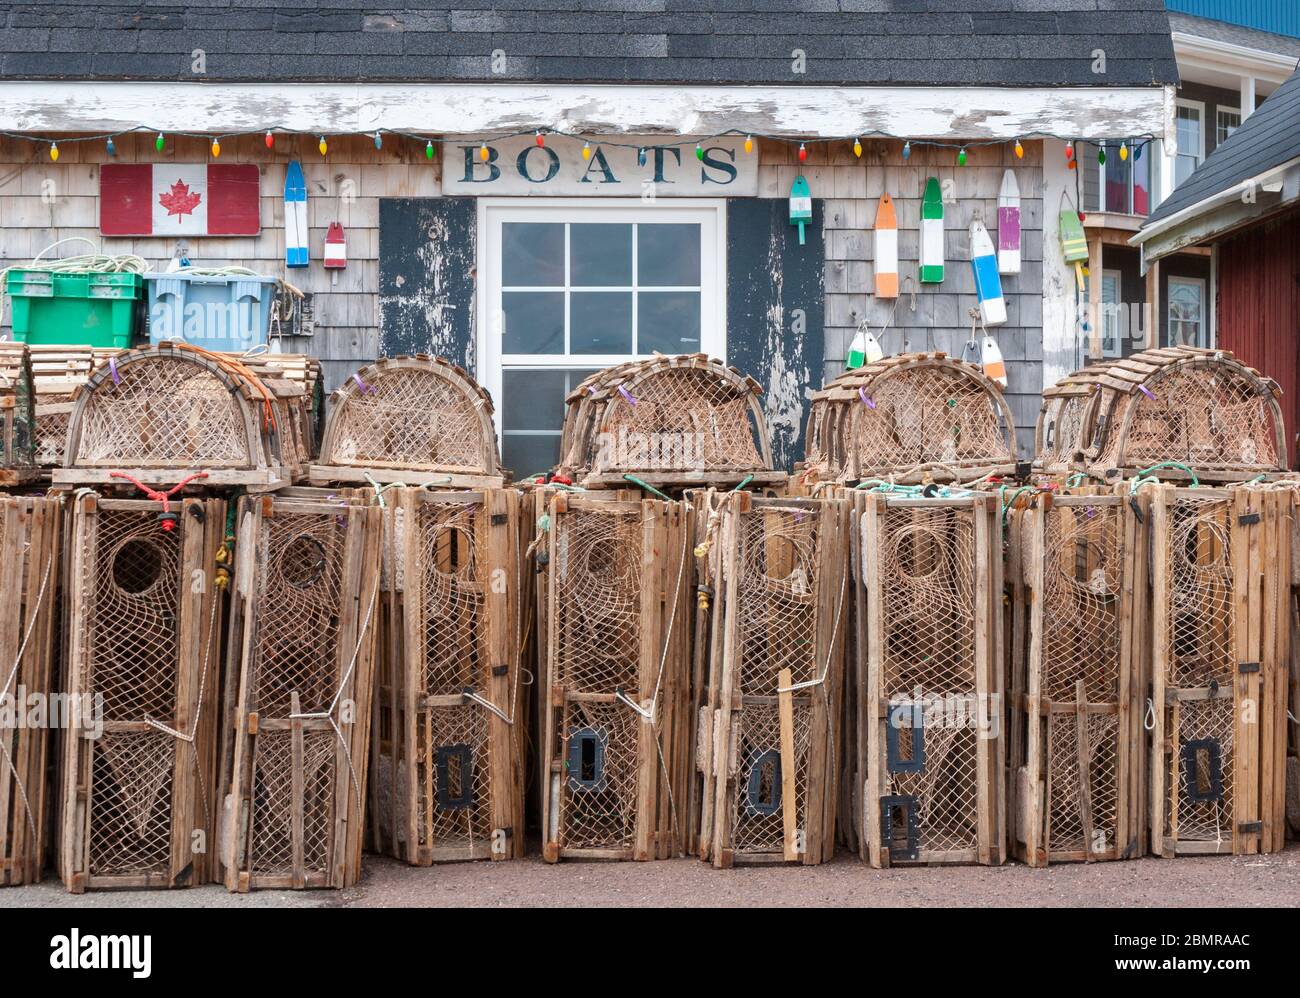 Casiers à homard empilés devant un cabane de pêcheur pittoresque, près des quais. Port de North Rustico, Île-du-Prince-Édouard, Canada Banque D'Images